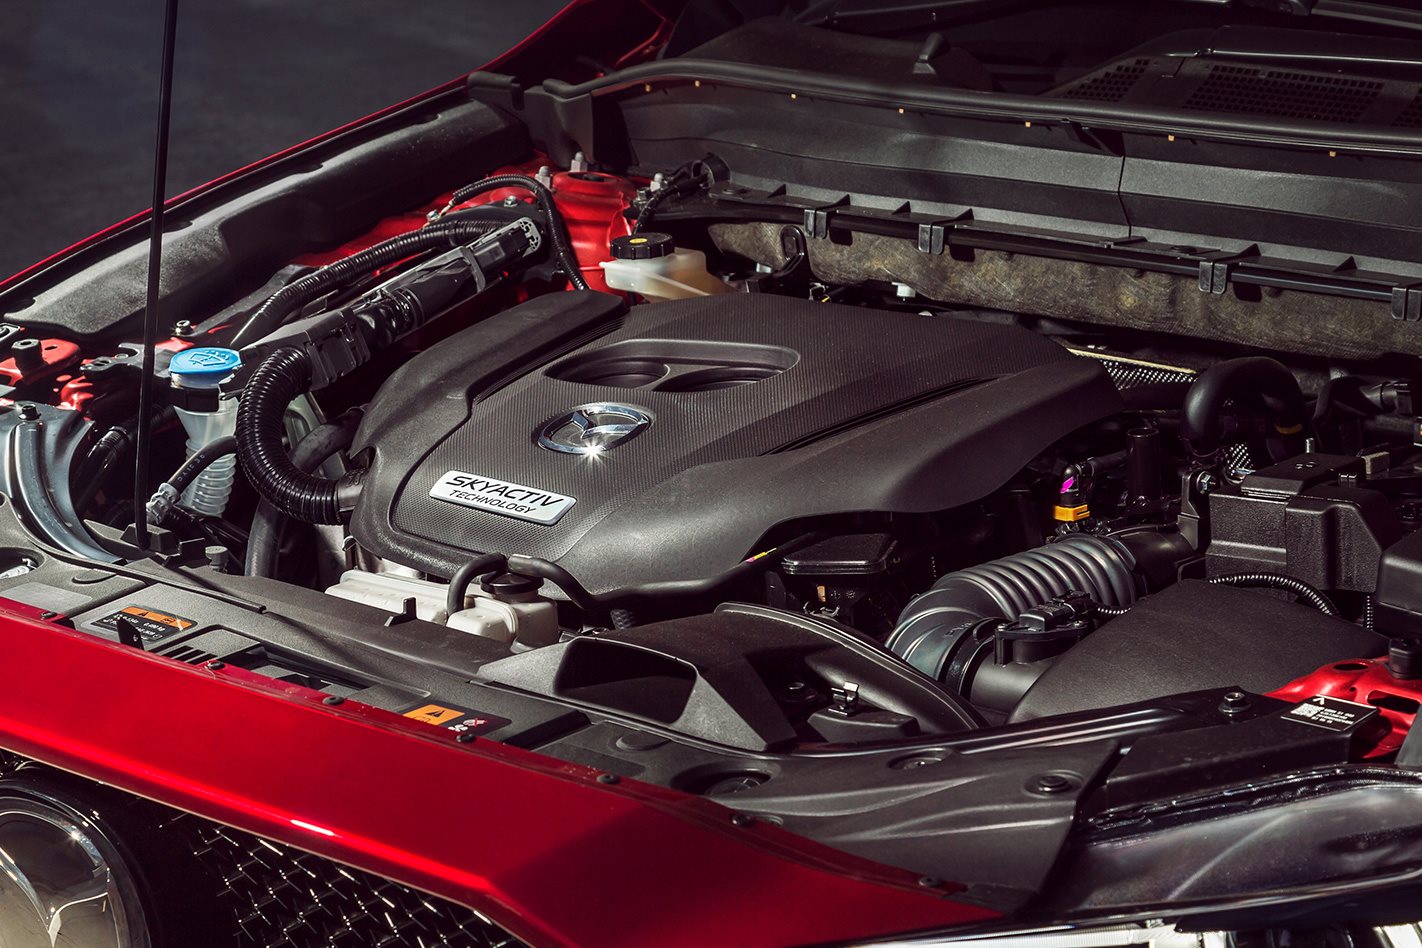 Thu hồi phiên bản Mazda CX-5 được bán từ năm 2012 đến 2018 chạy động cơ diesel (Ảnh: whichcar.com.au)